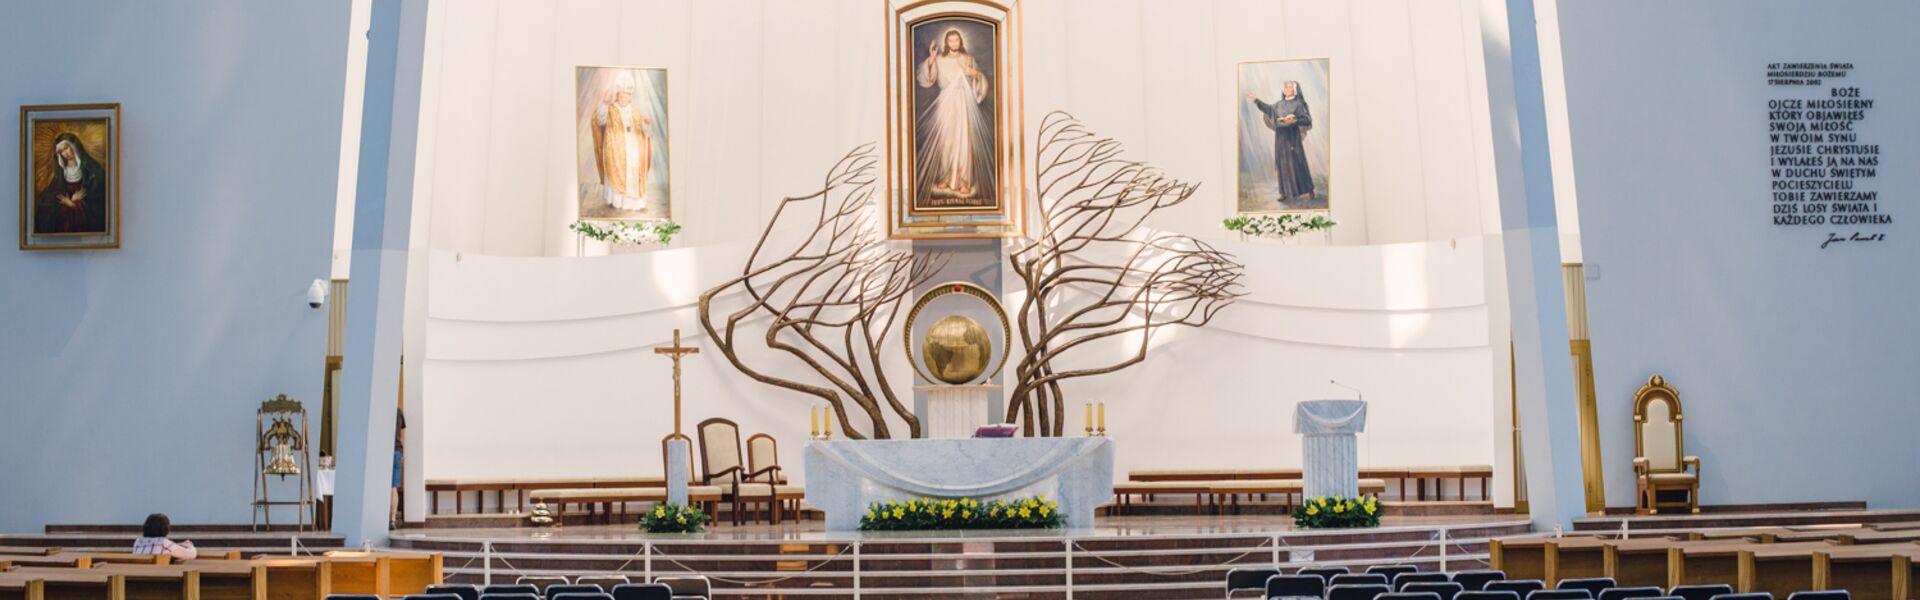 Sanktuarium Miłosierdzia Bożego - ołtarz